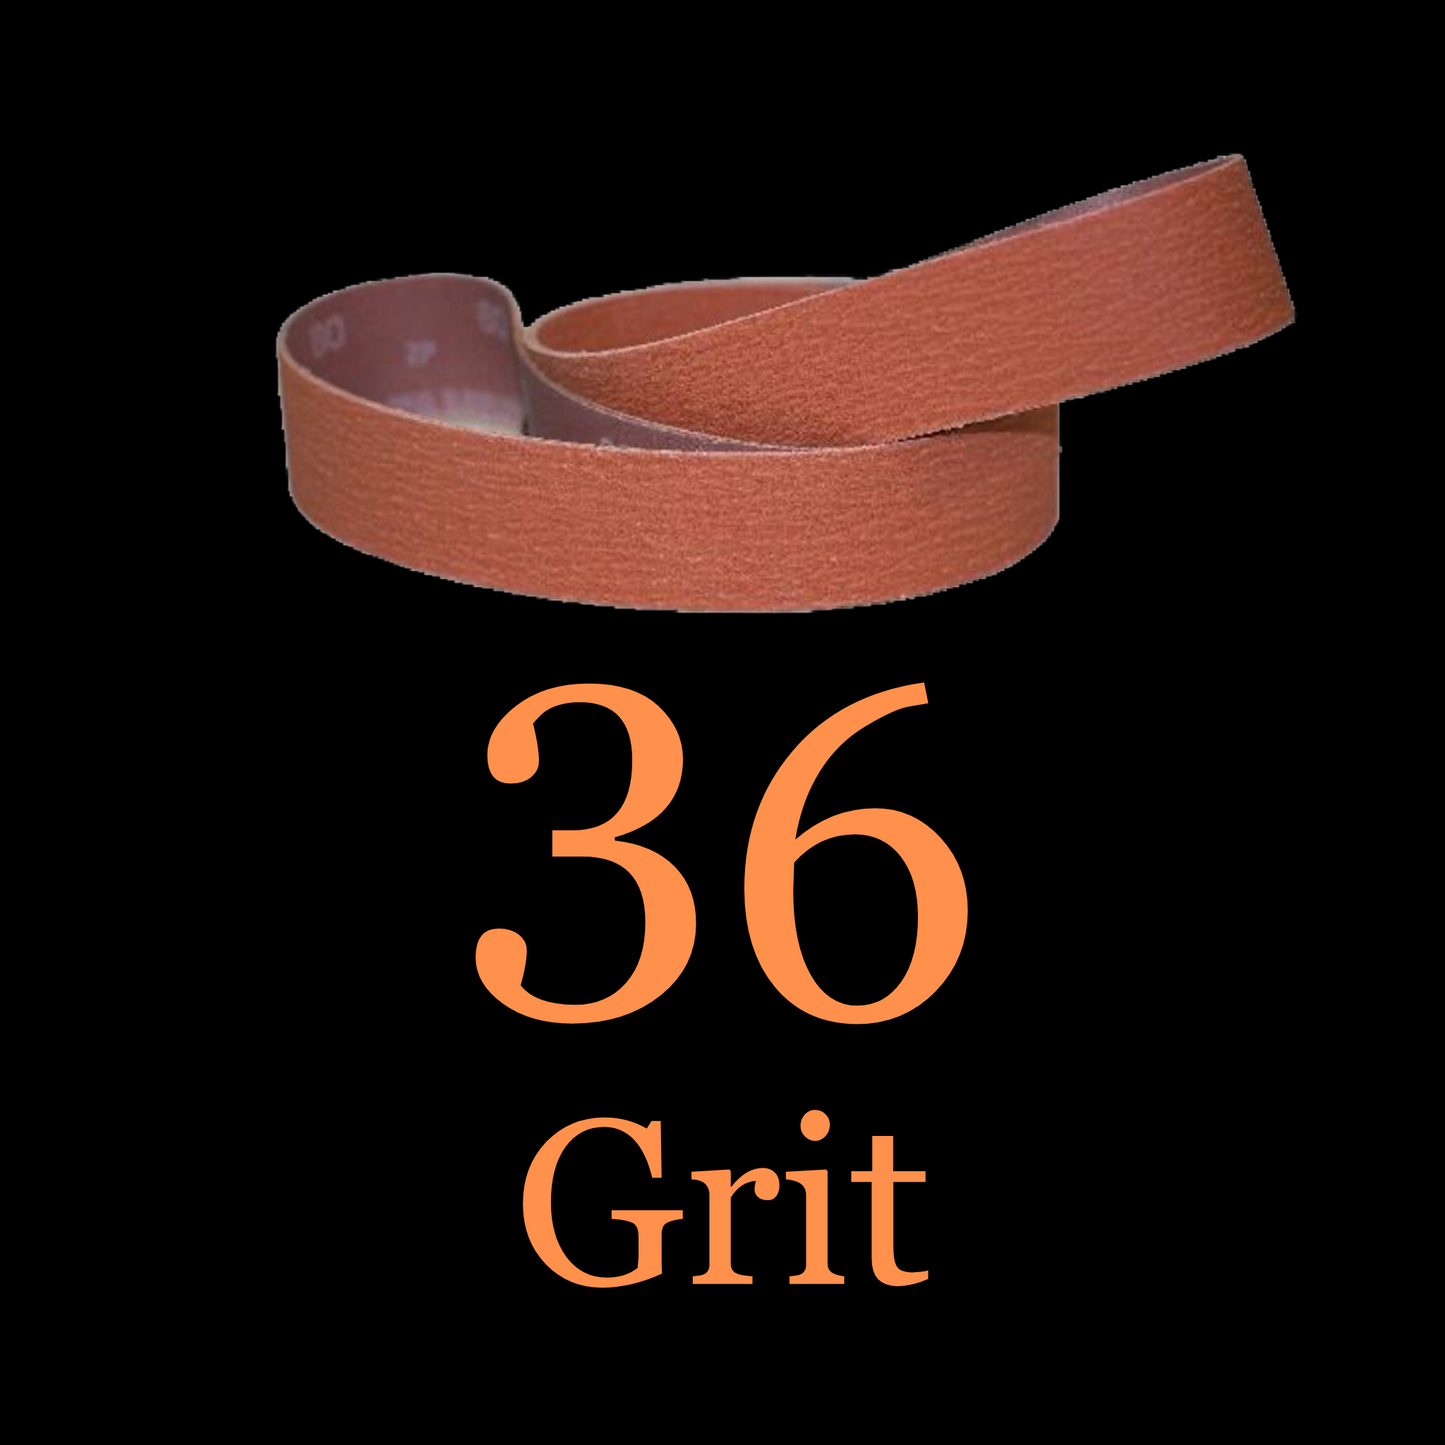 1” x 42” Ceramic Blaze Grinder Belt 36 Grit